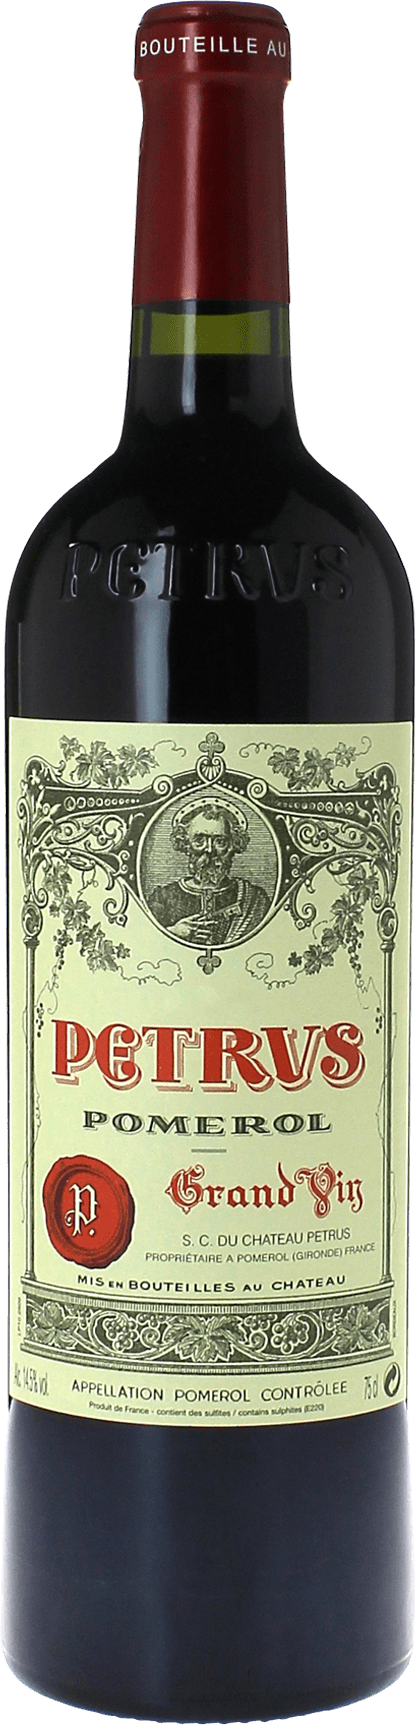 Petrus 2017  Pomerol, Bordeaux rouge